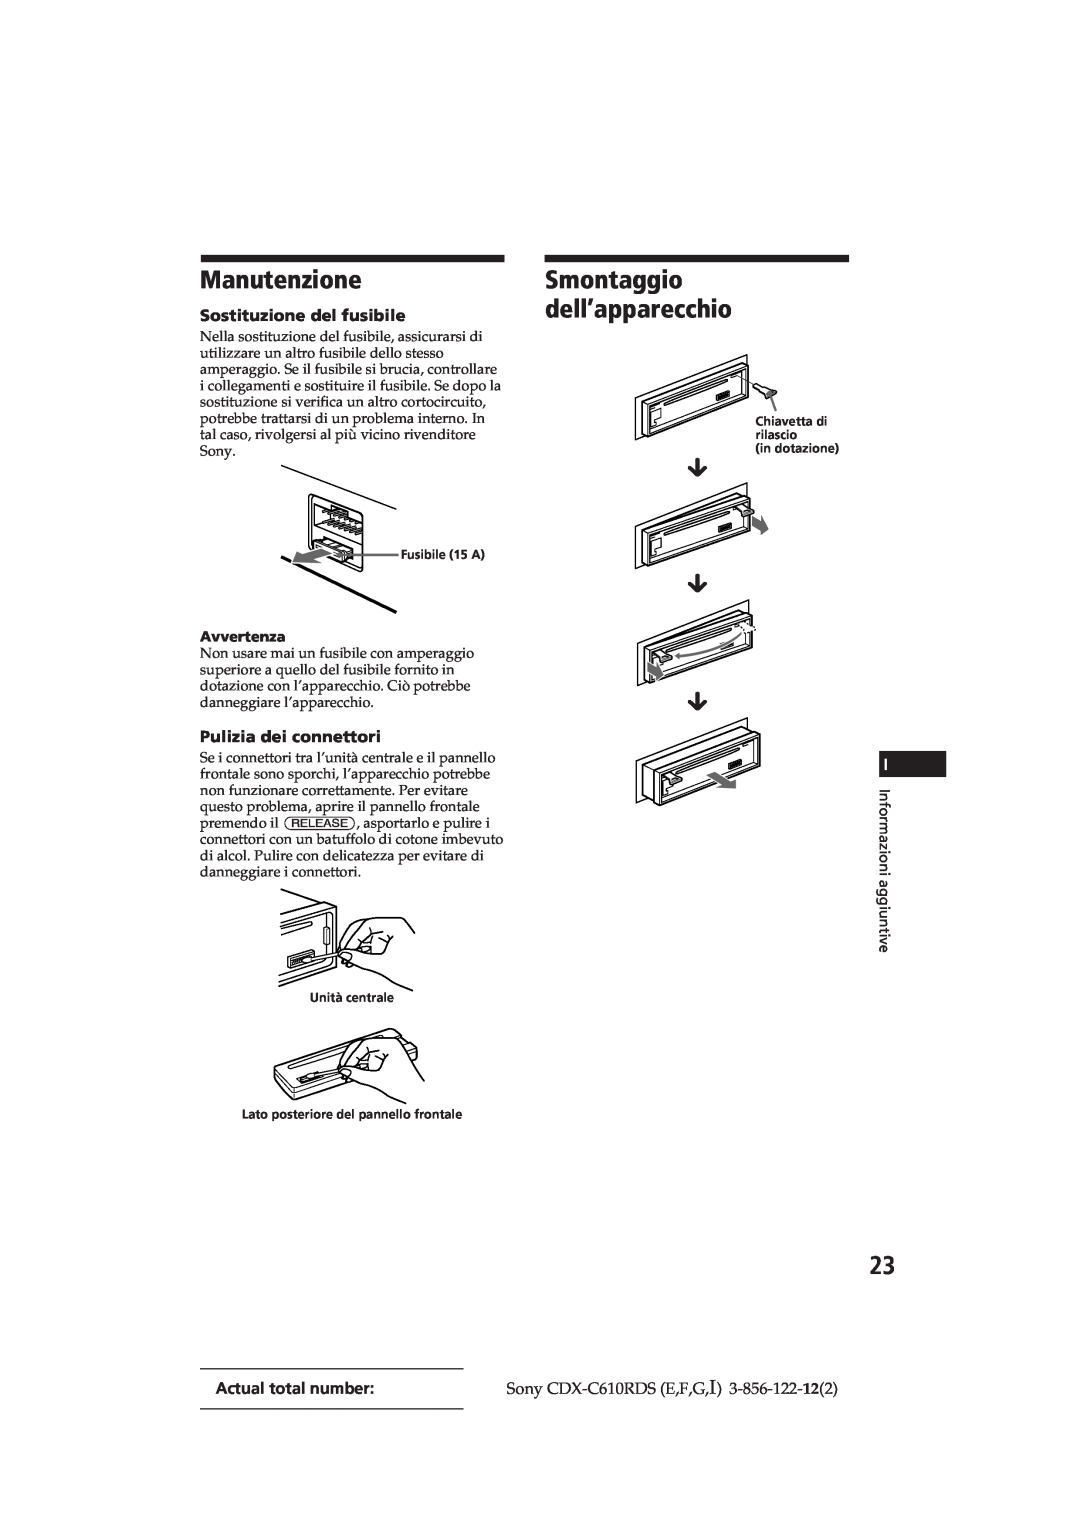 Sony CDX-C610RDS manual Manutenzione, Smontaggio dell’apparecchio, Sostituzione del fusibile, Pulizia dei connettori, µ µ µ 